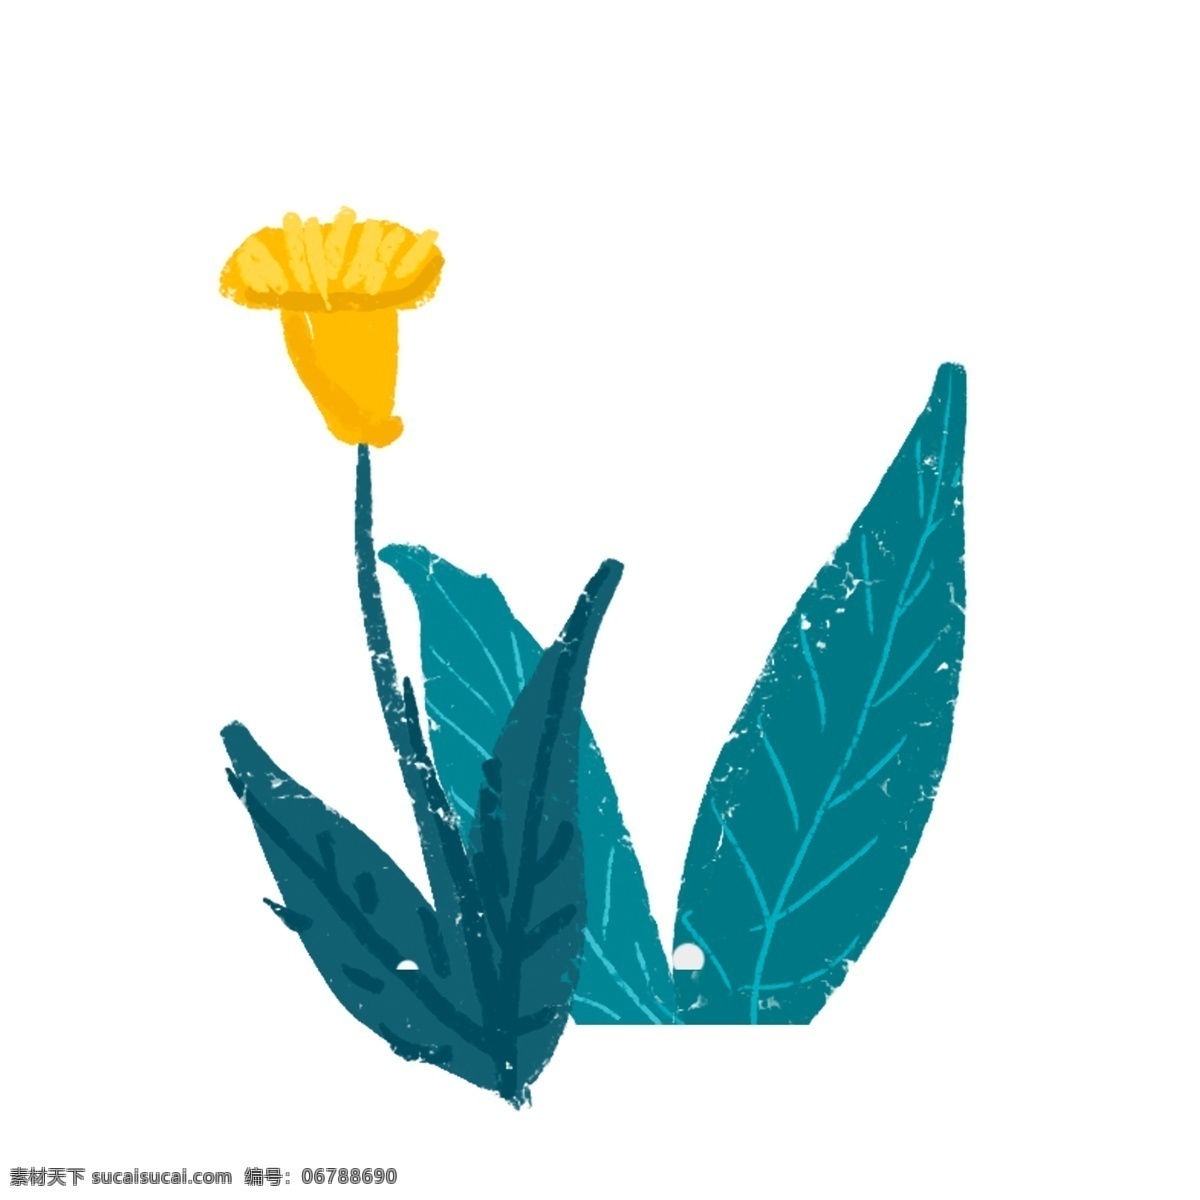 一个 精美 漂亮 的卡 通 手绘 花卉 免 扣 卡通 免扣 精美的花卉 漂亮的花卉 卡通手绘花卉